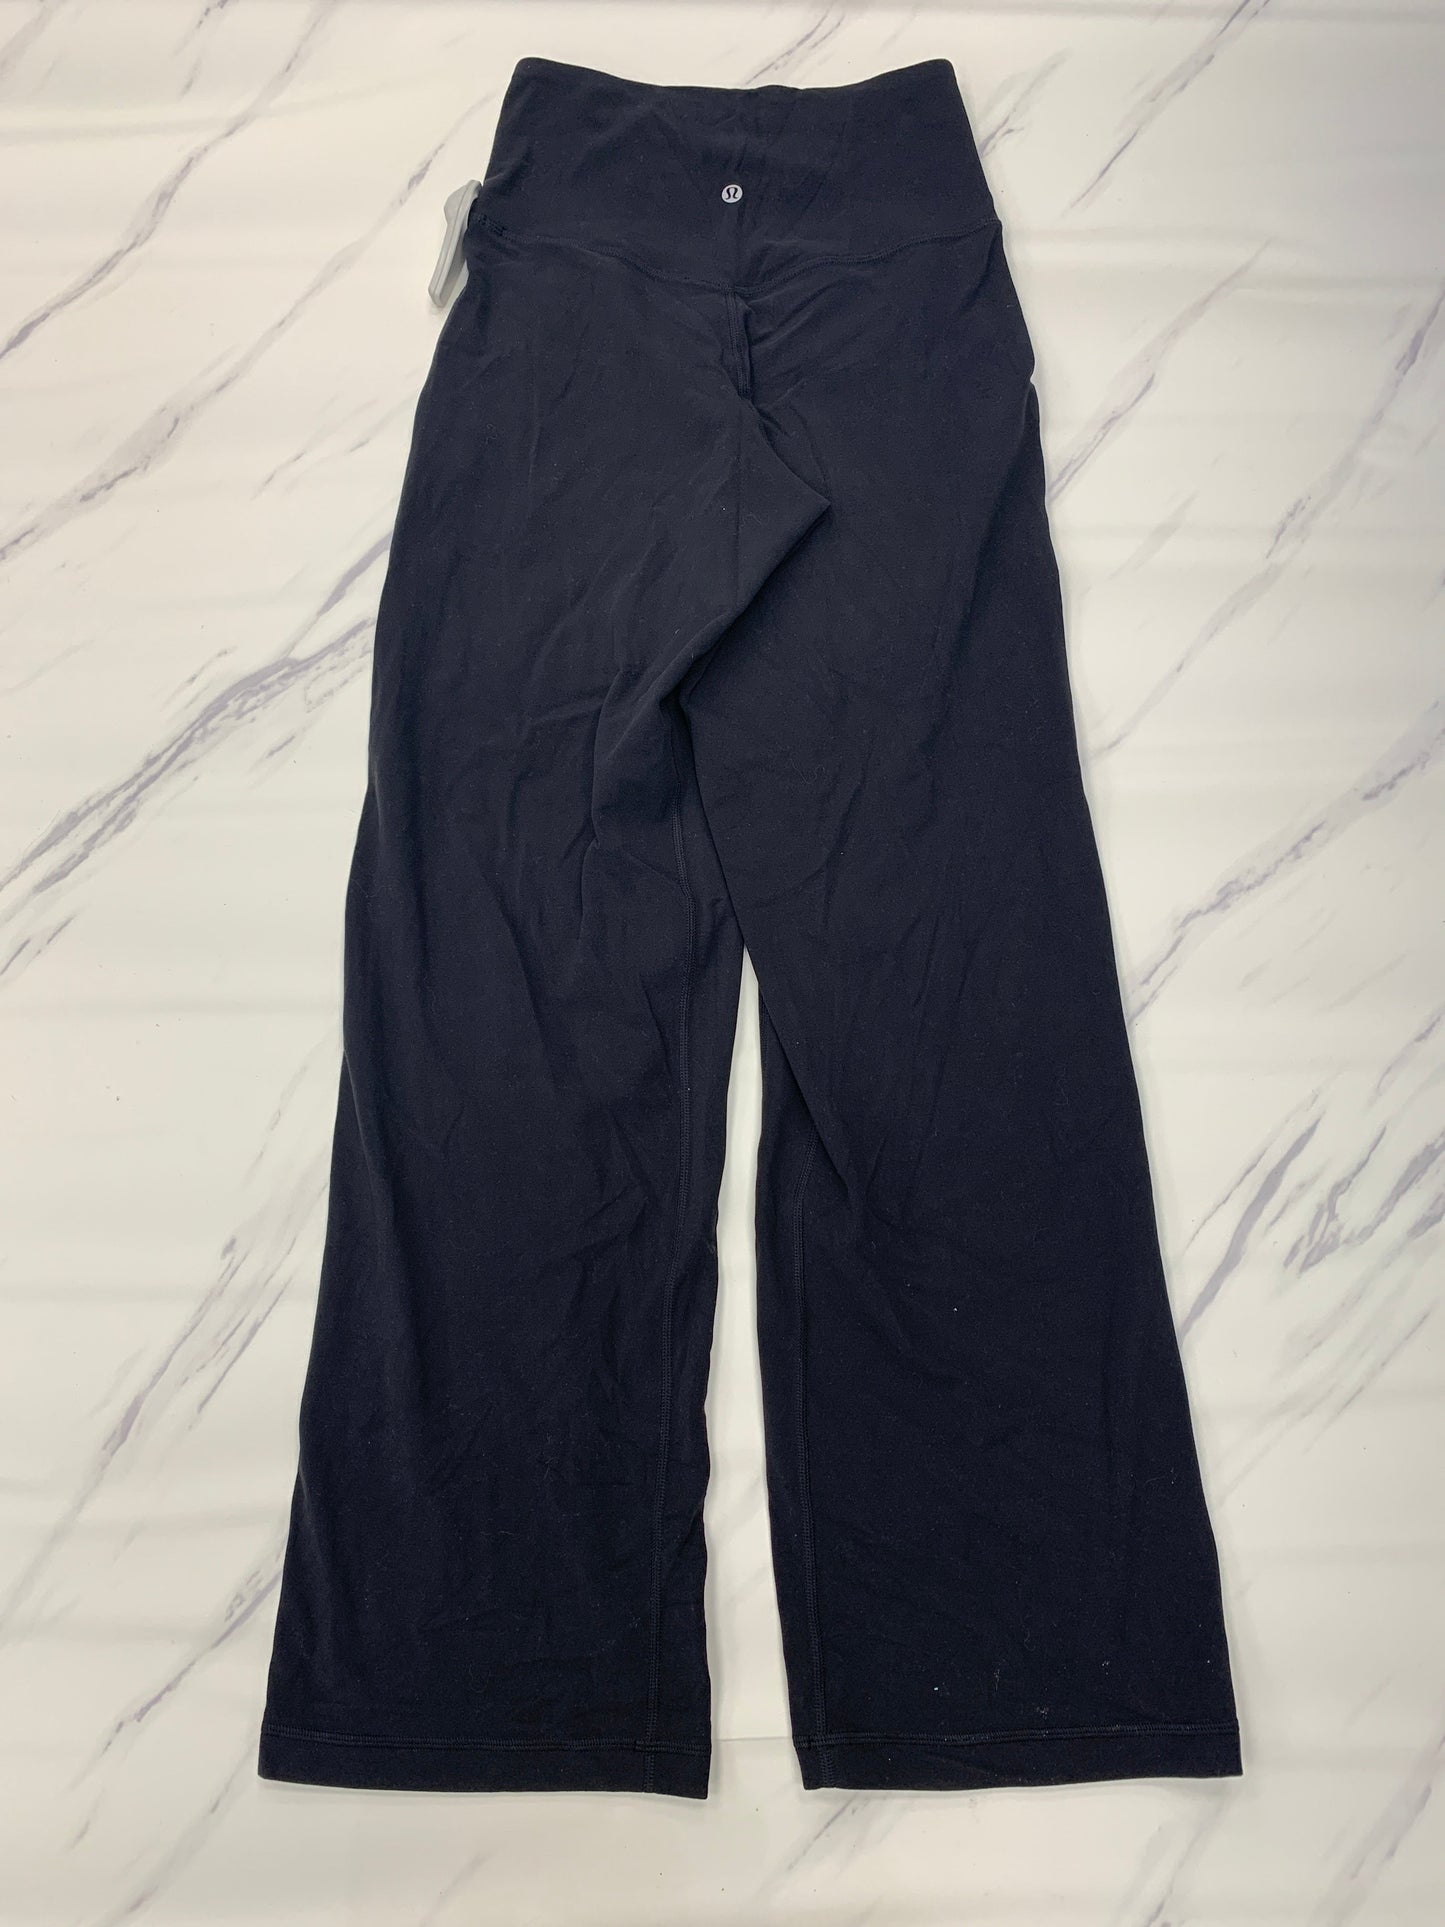 Black Athletic Pants Lululemon, Size 4